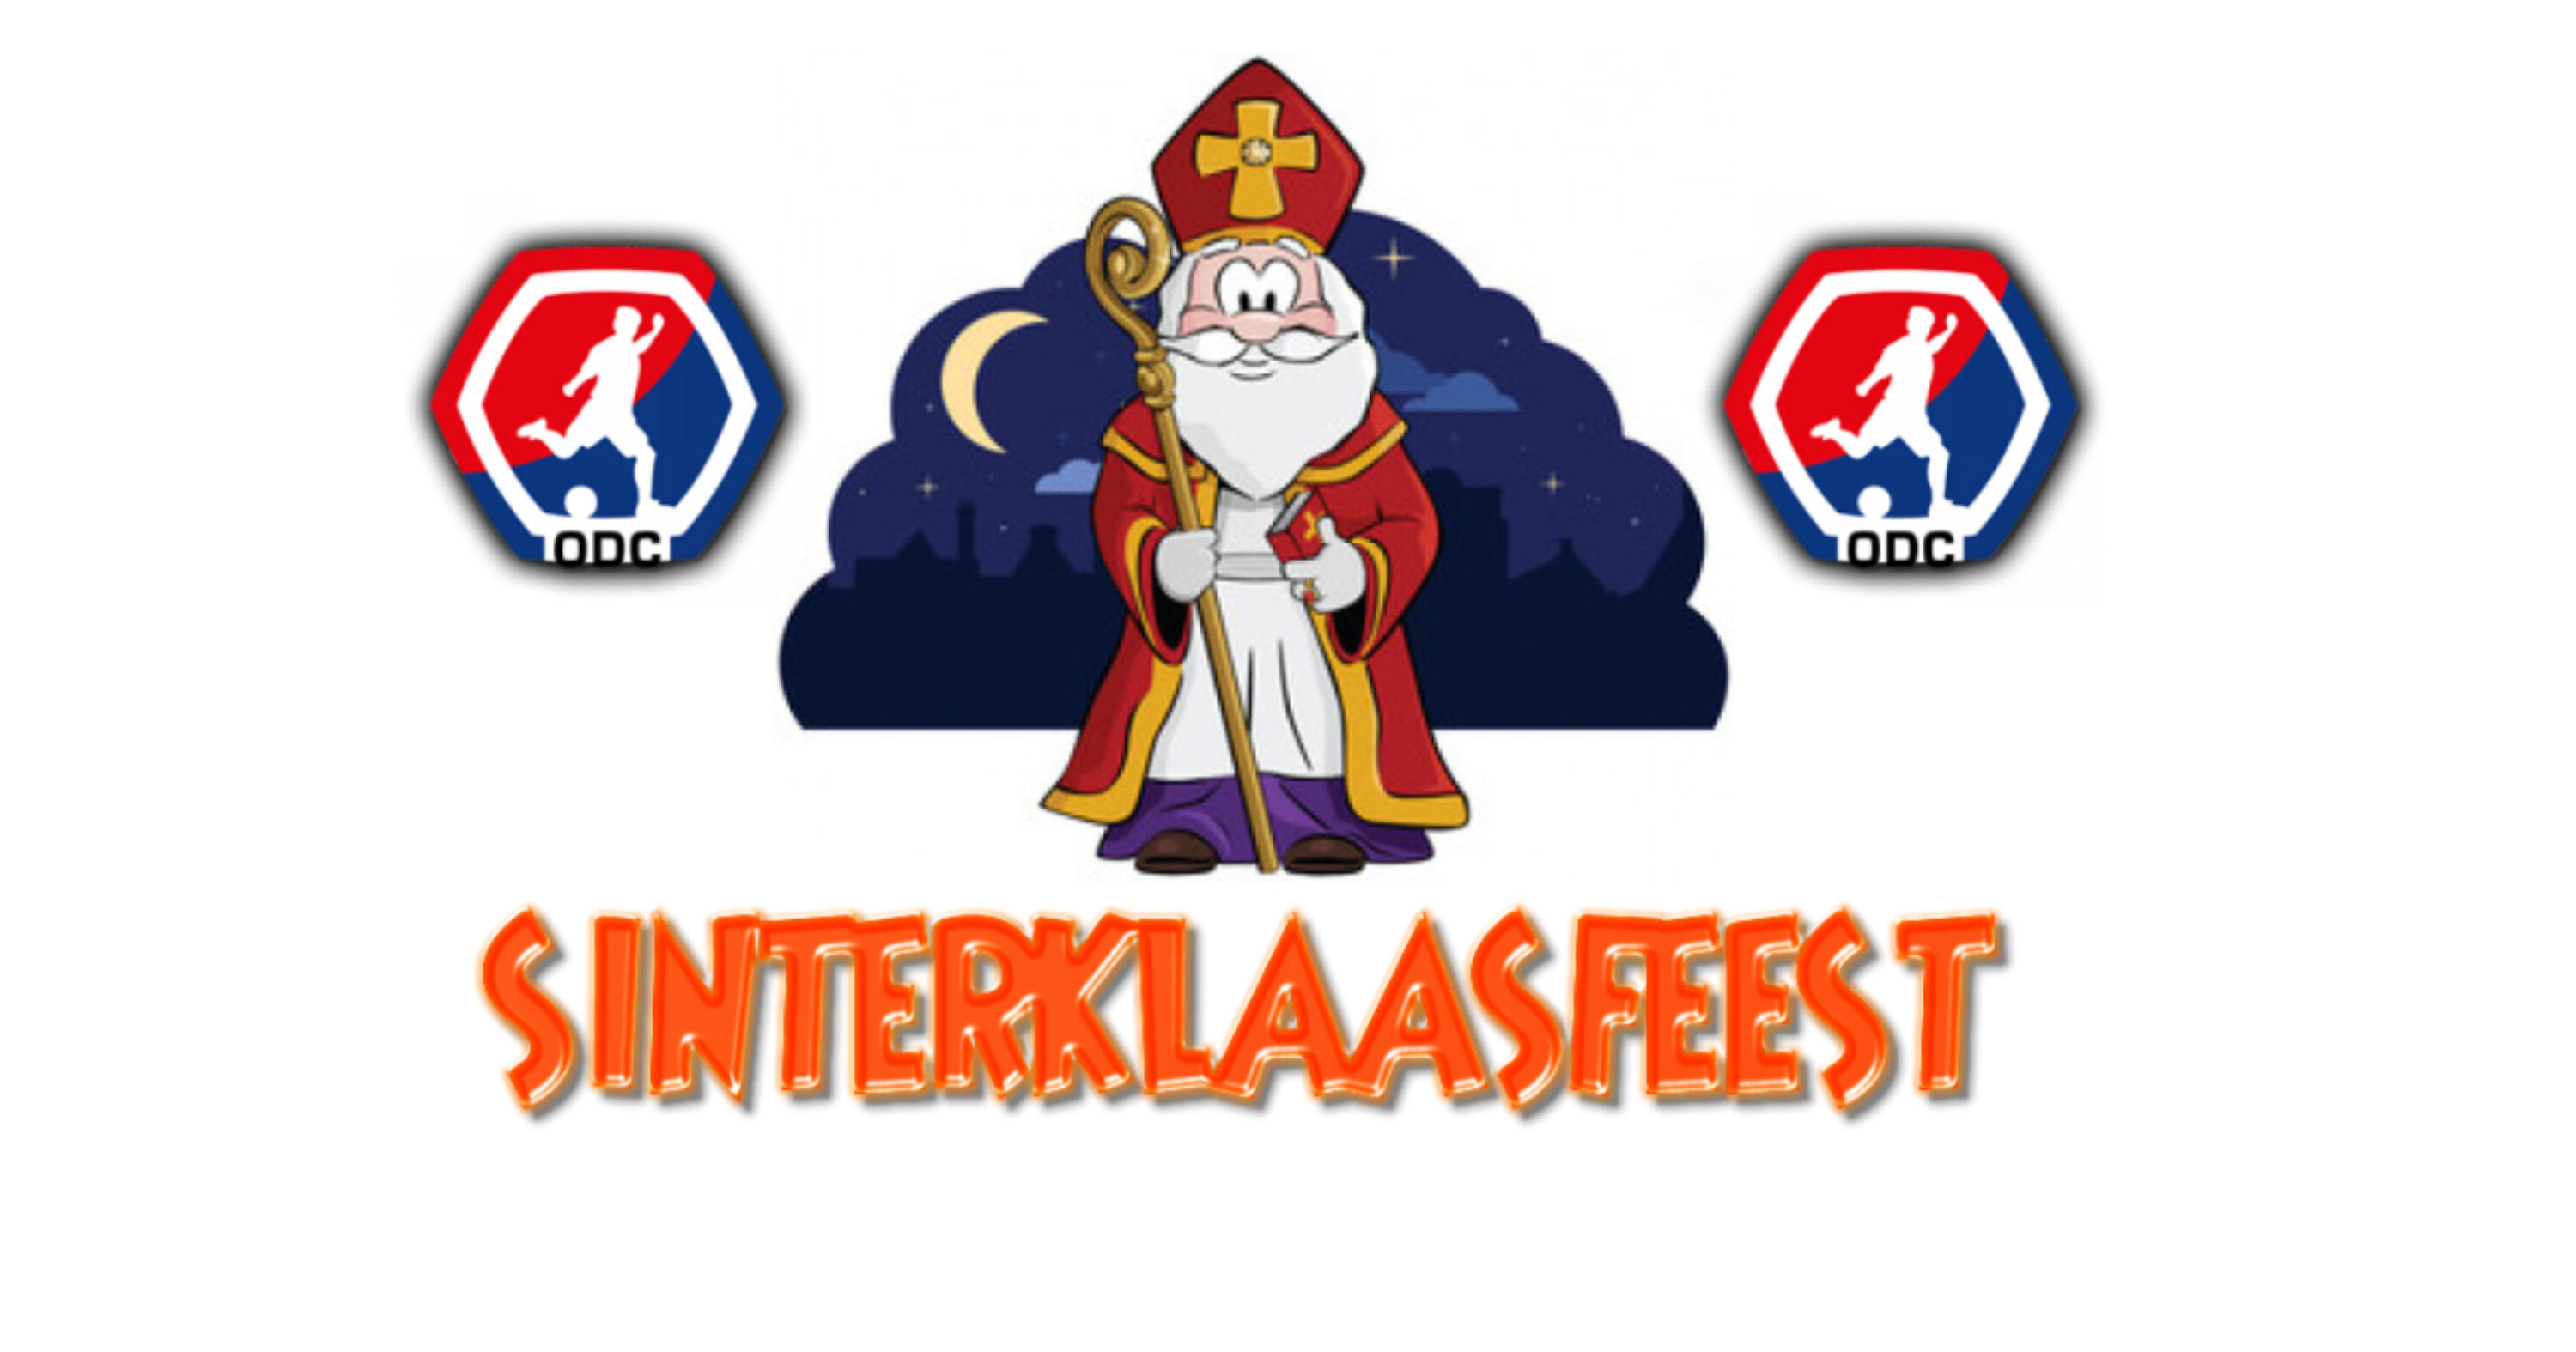 ODC Sinterklaasfeest 2019